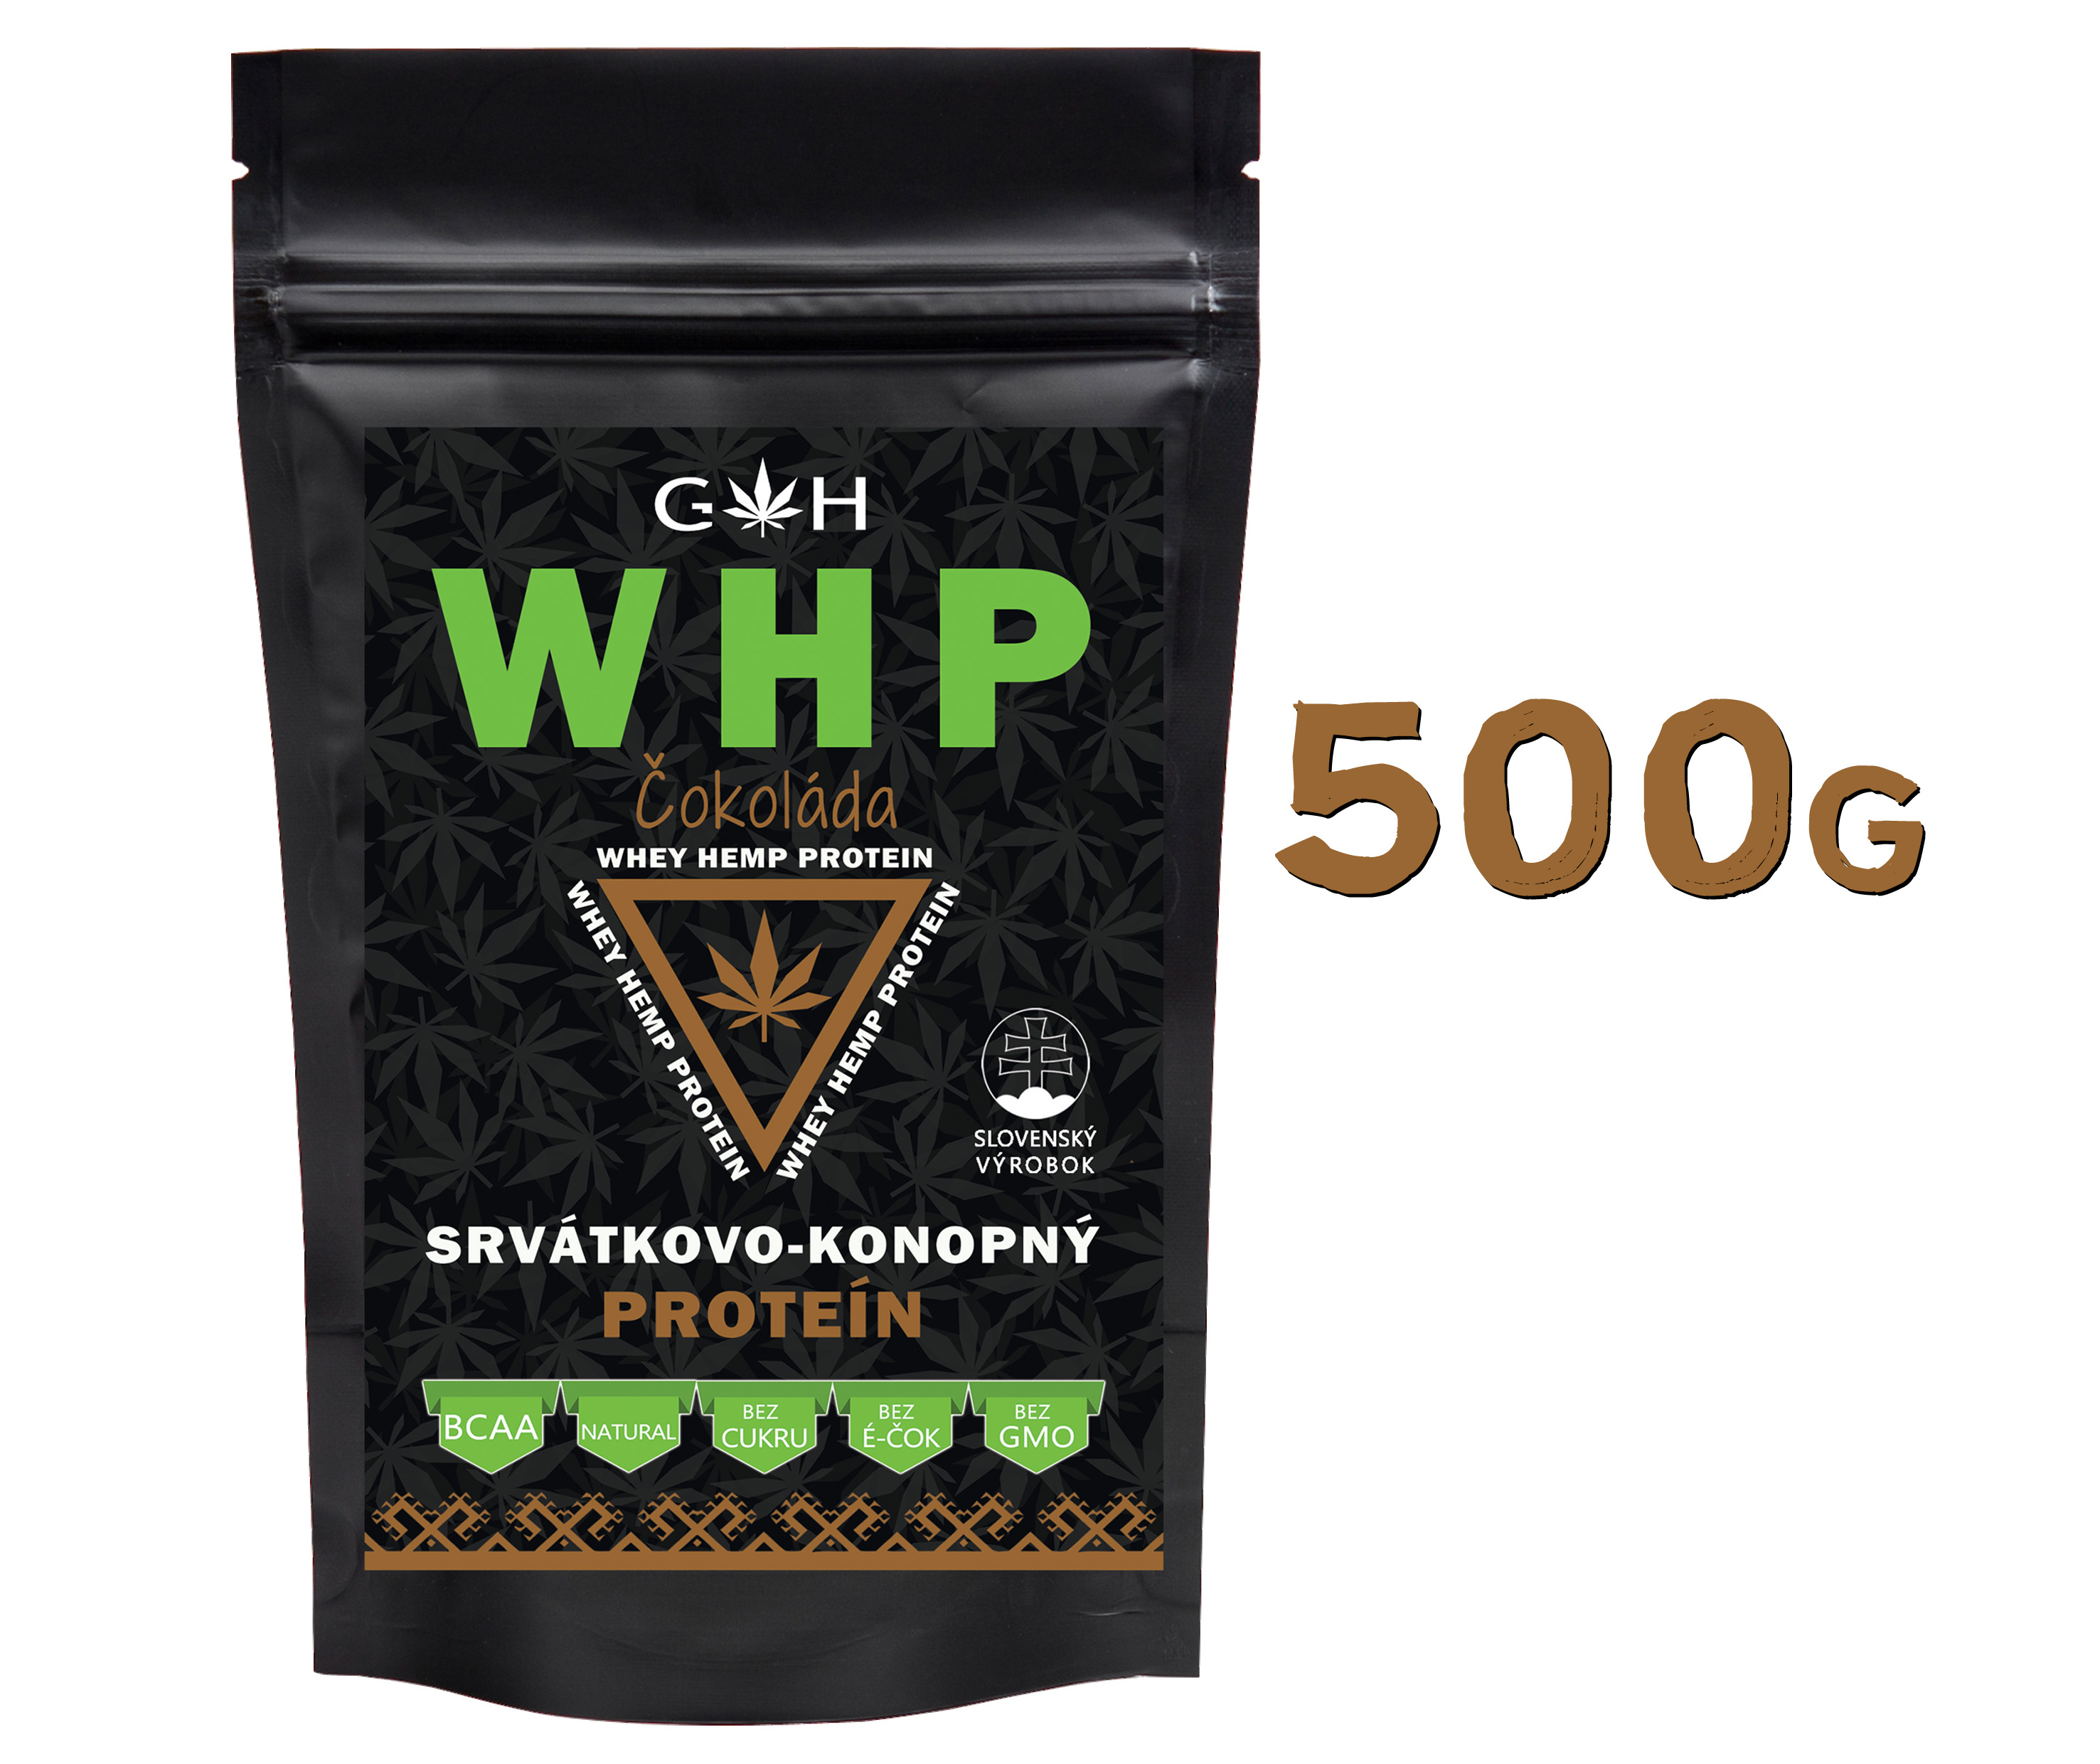  WHP proteín / čokoláda 500g